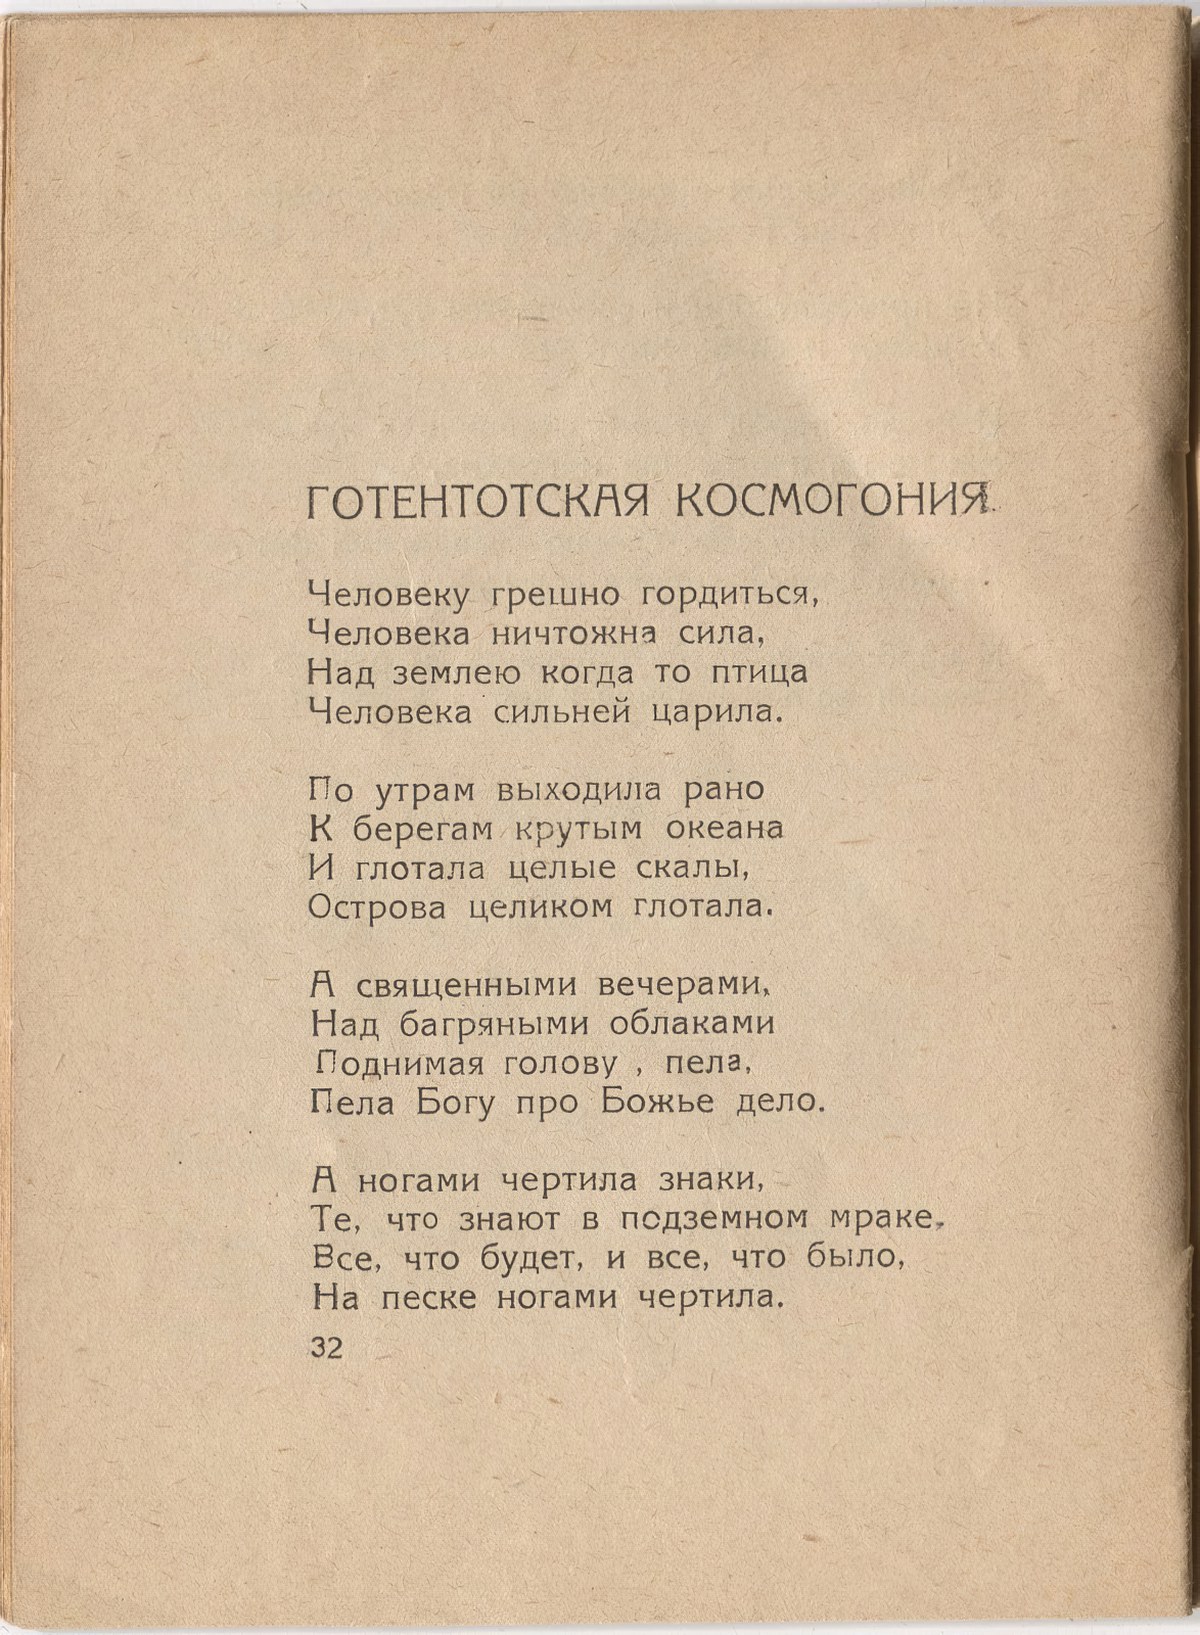 Шатёр (1921). «Готтентотская космогония». Страница 32